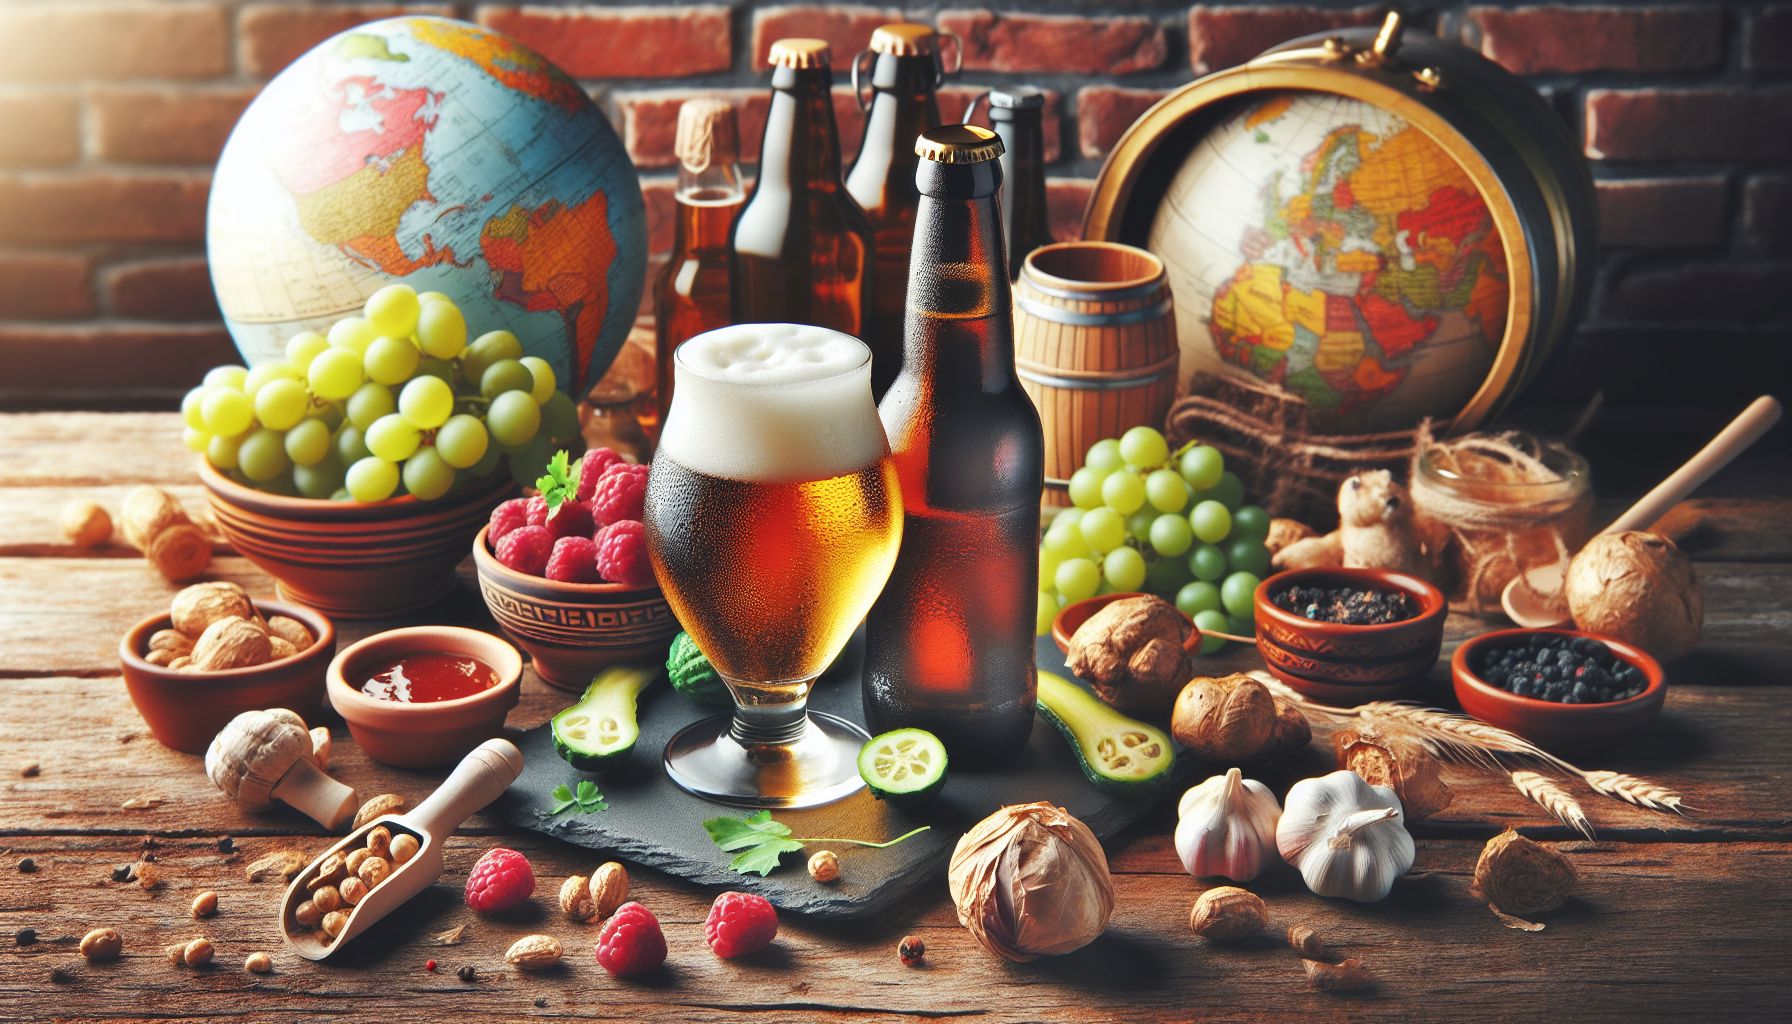 Õllekultuur maailmas: traditsioonid, trendid ja tervislikkus